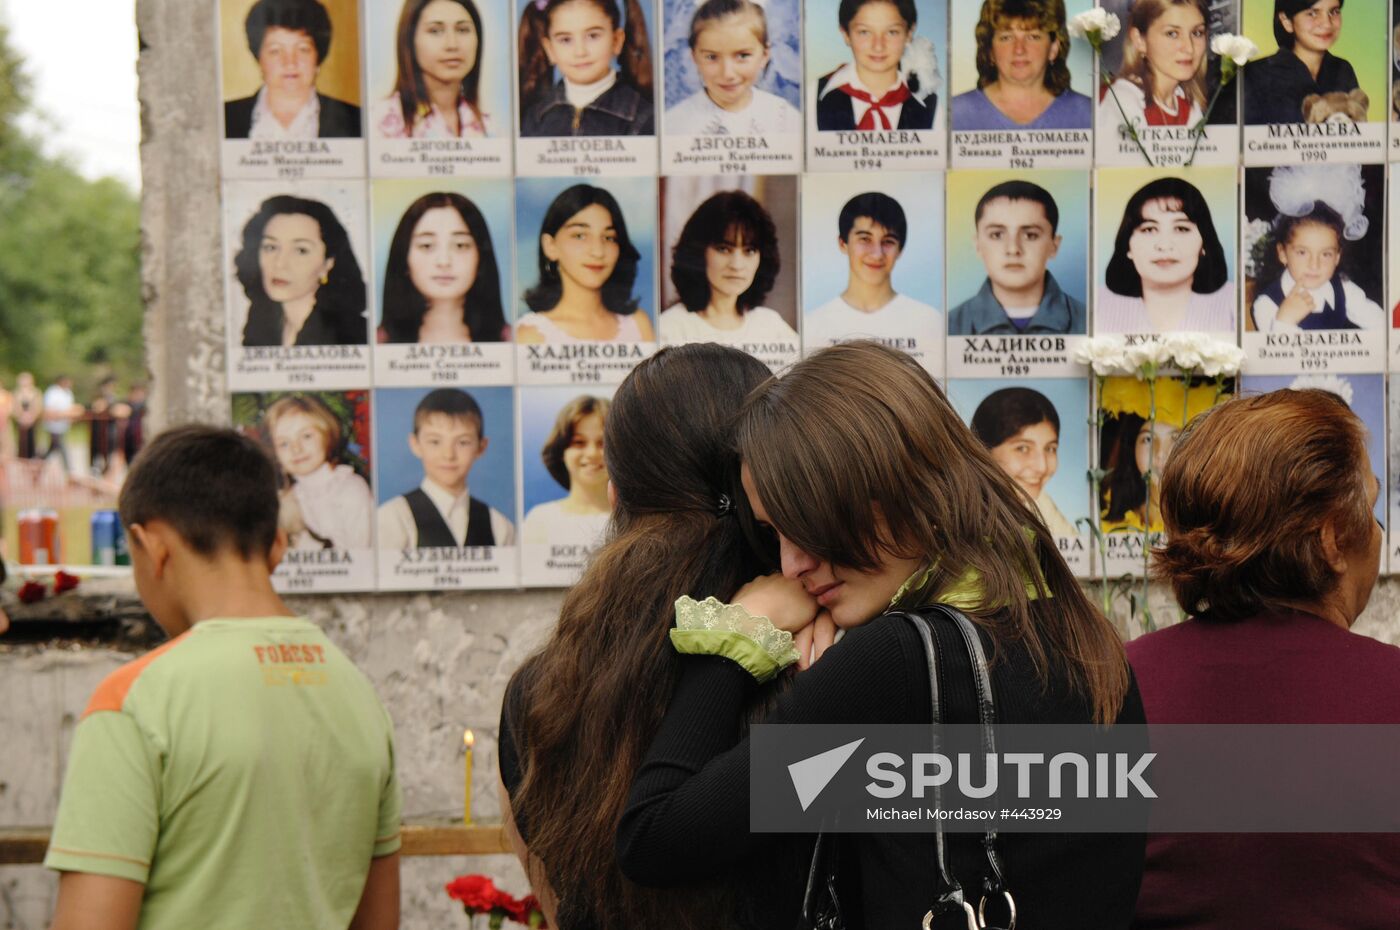 Mourning in Beslan